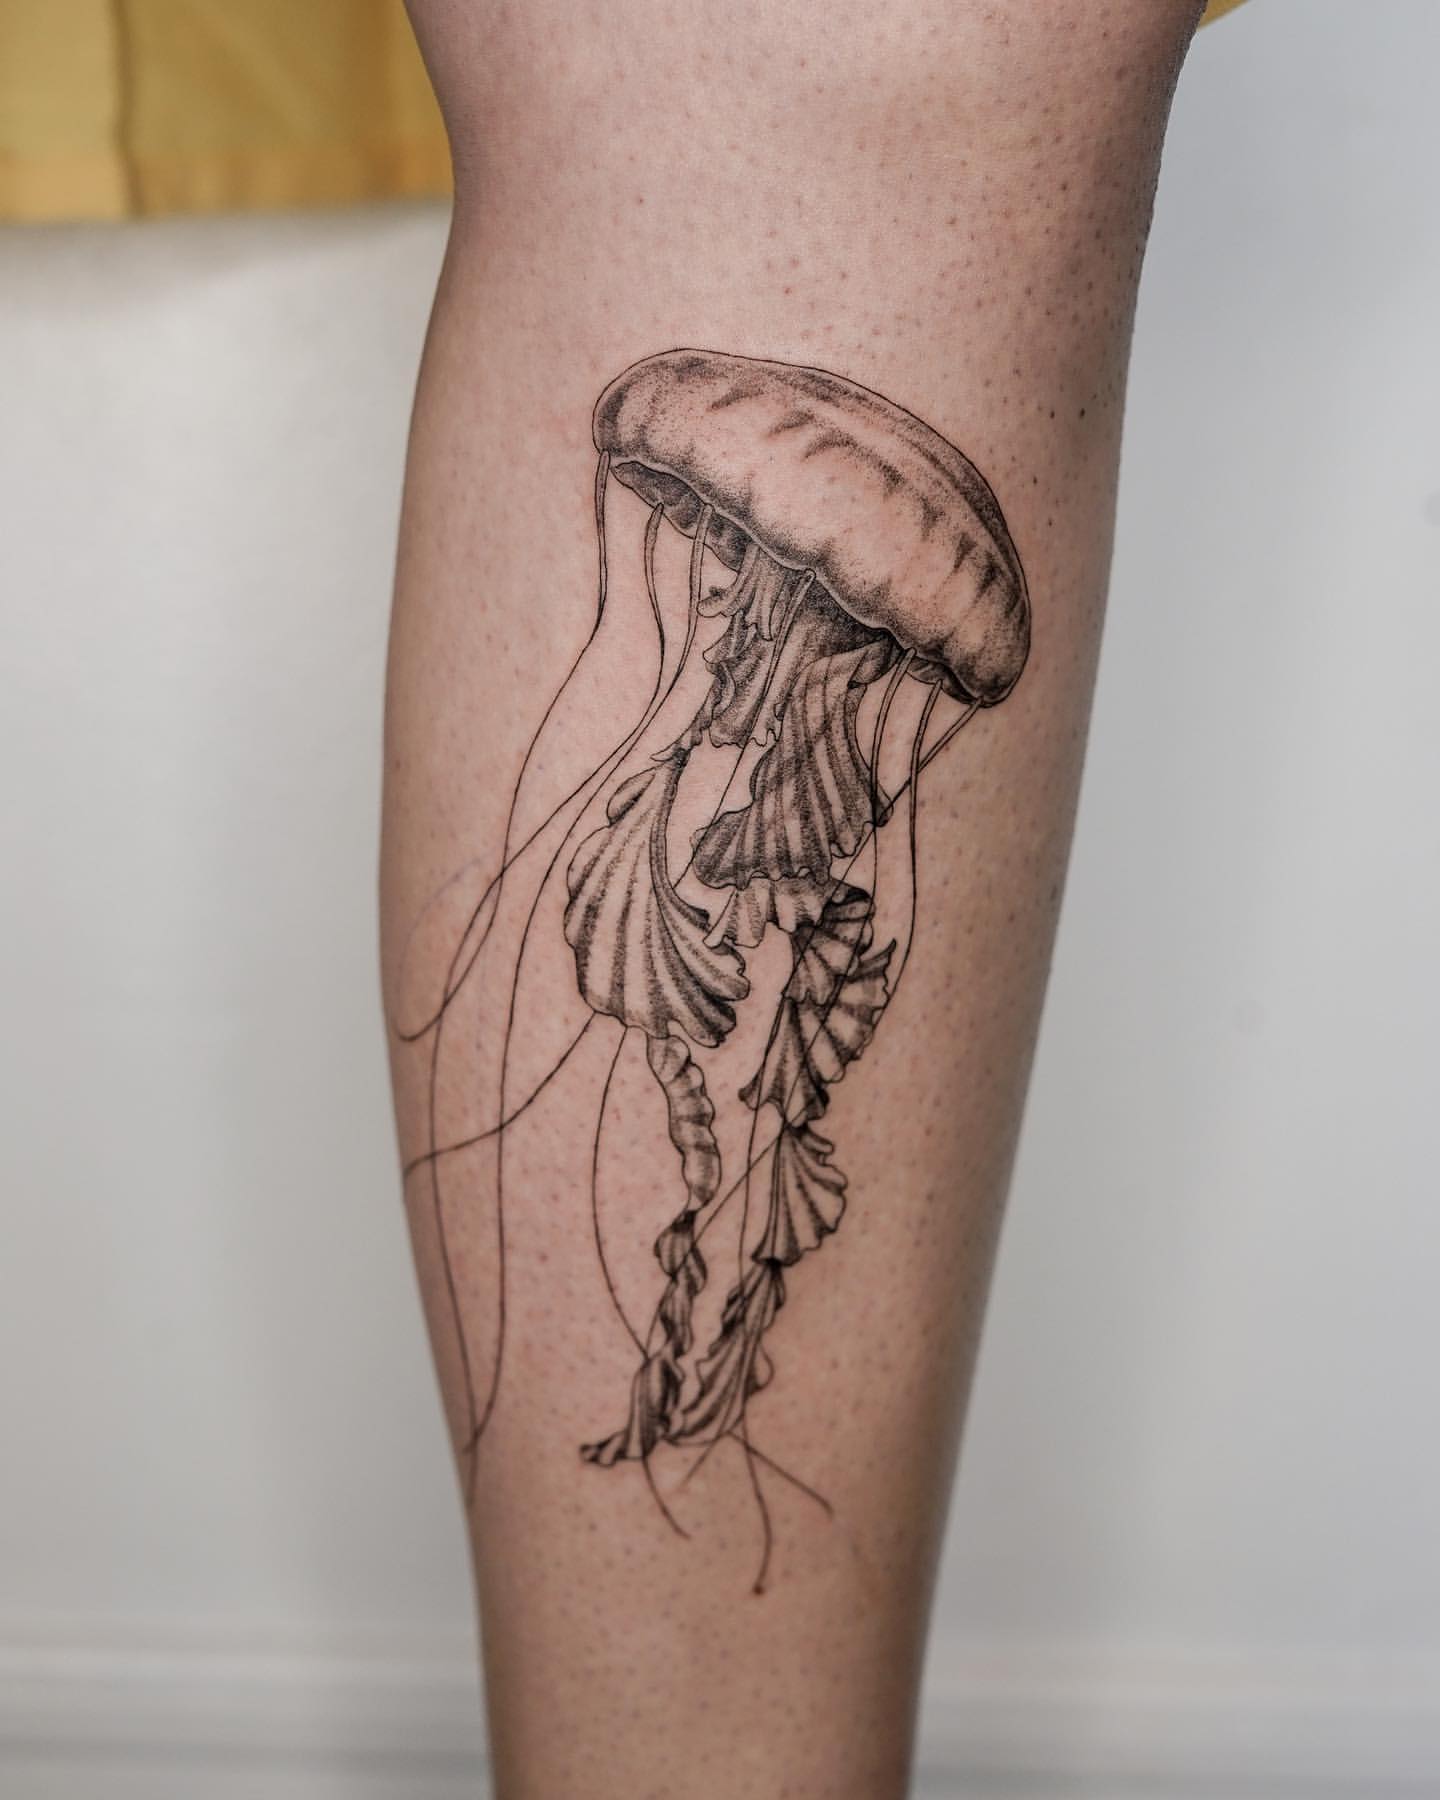 Jellyfish tattoo ideas